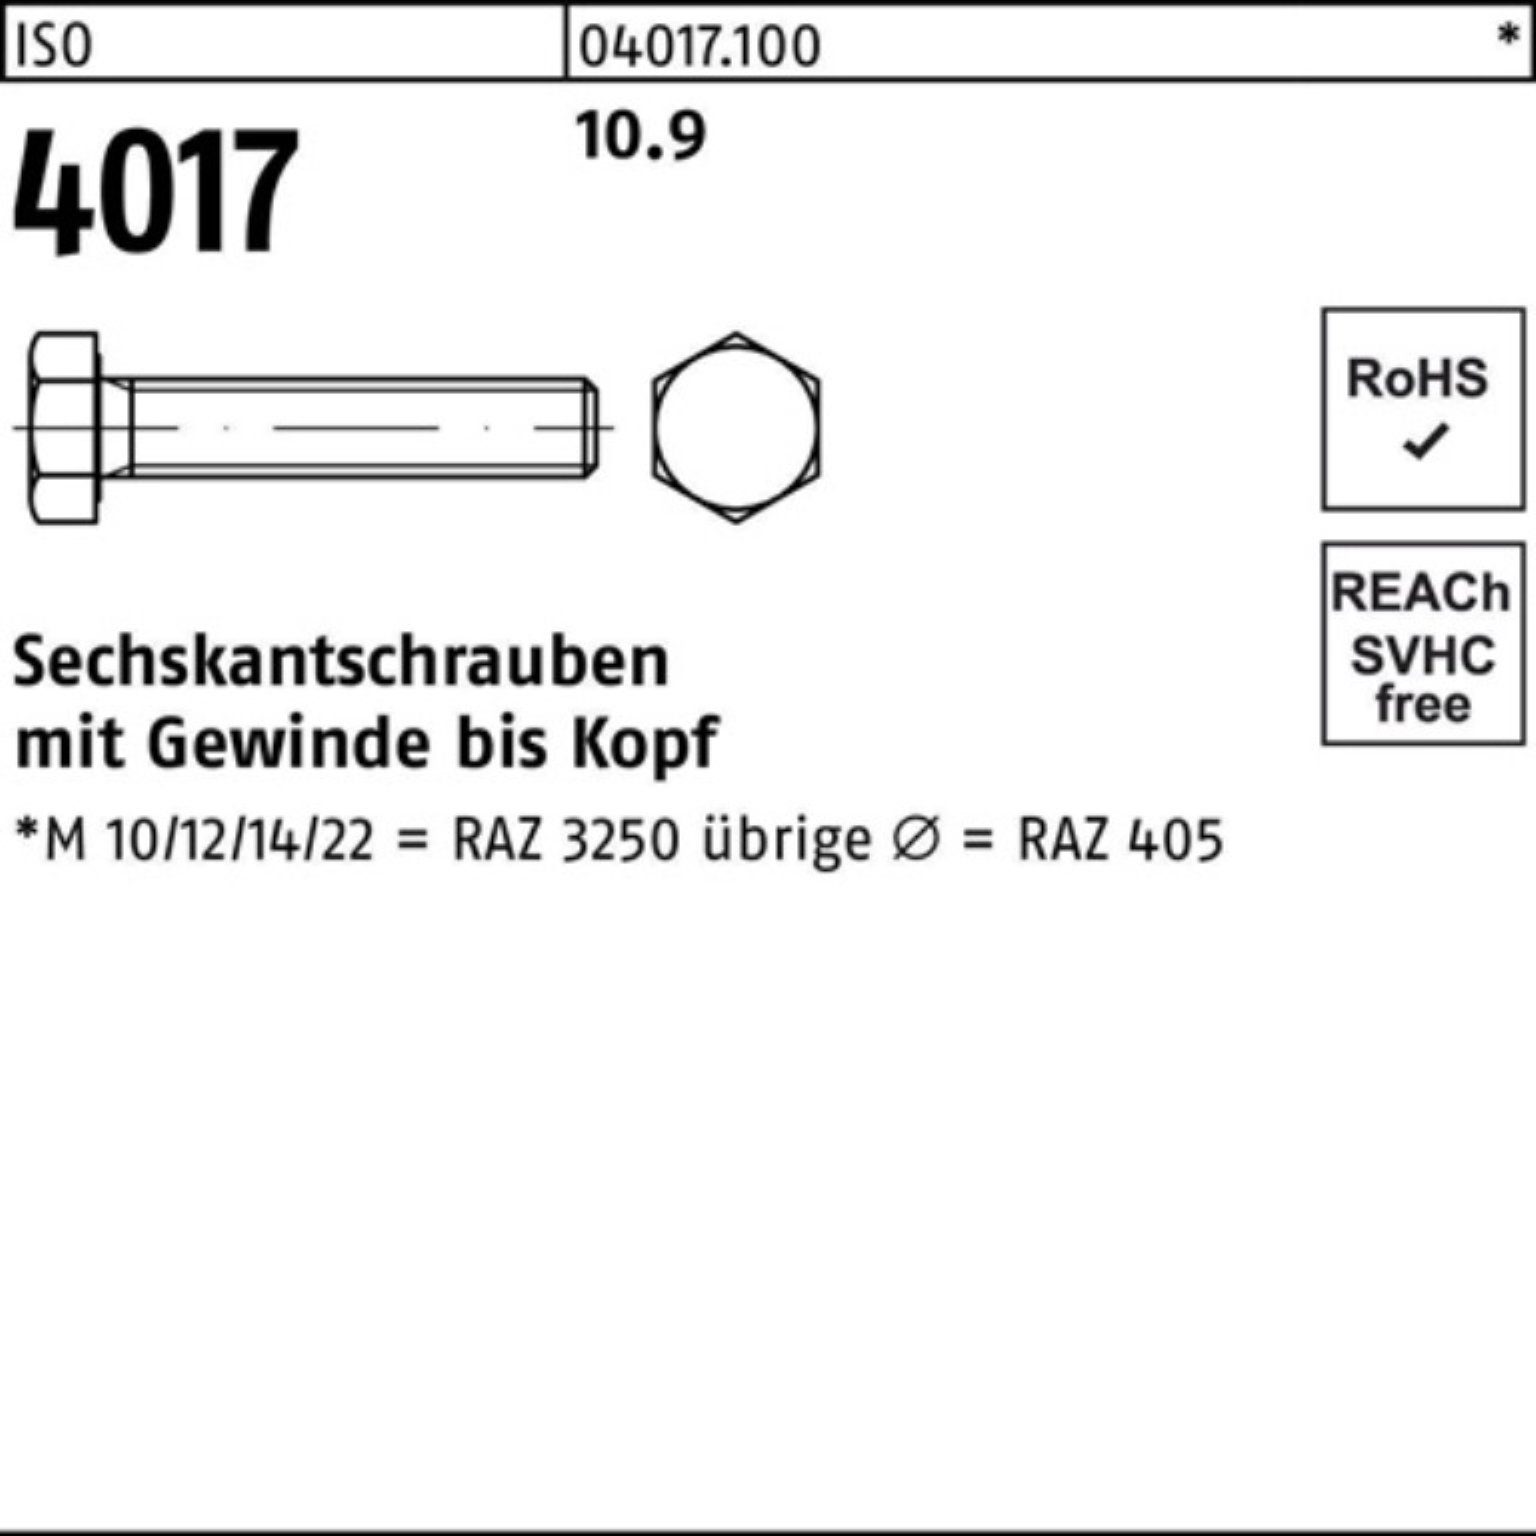 Bufab Sechskantschraube 100er Pack Sechskantschraube ISO 401 4017 Stück M36x VG 50 10.9 ISO 1